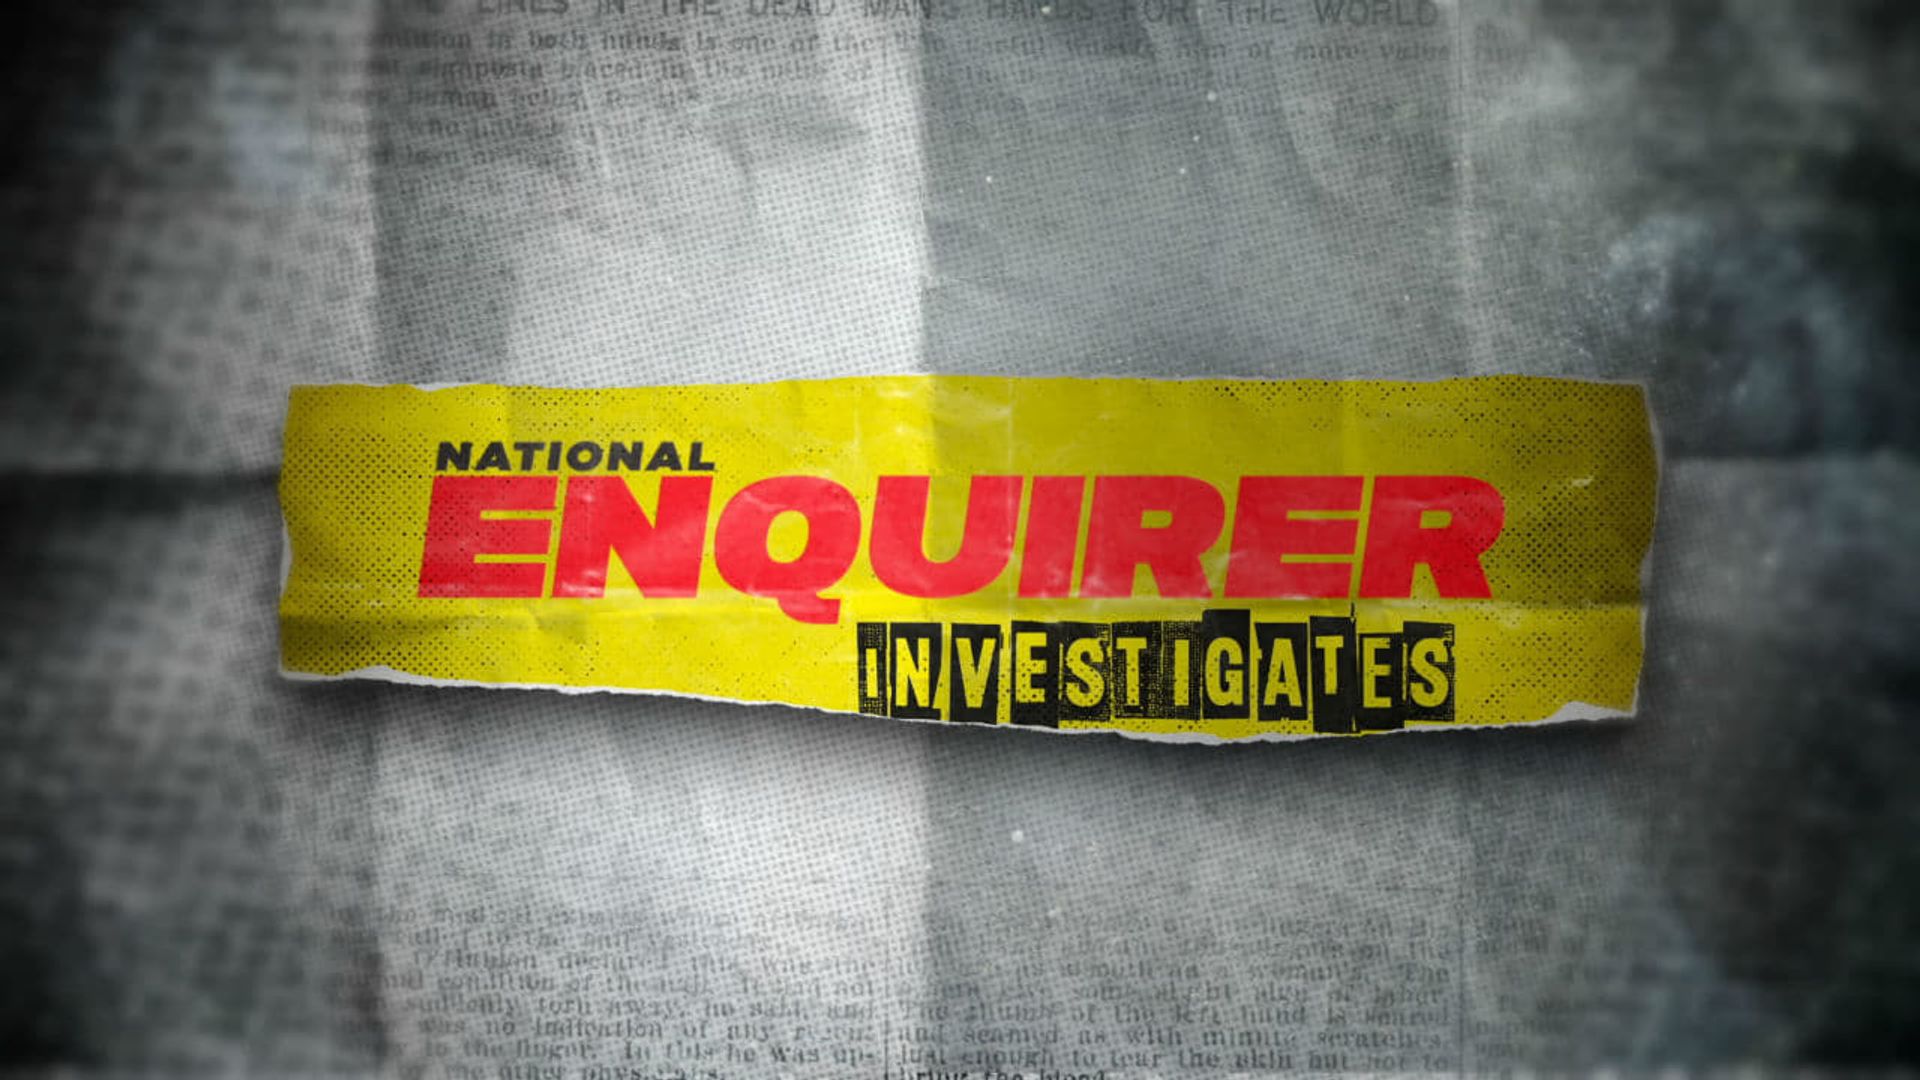 National Enquirer Investigates background